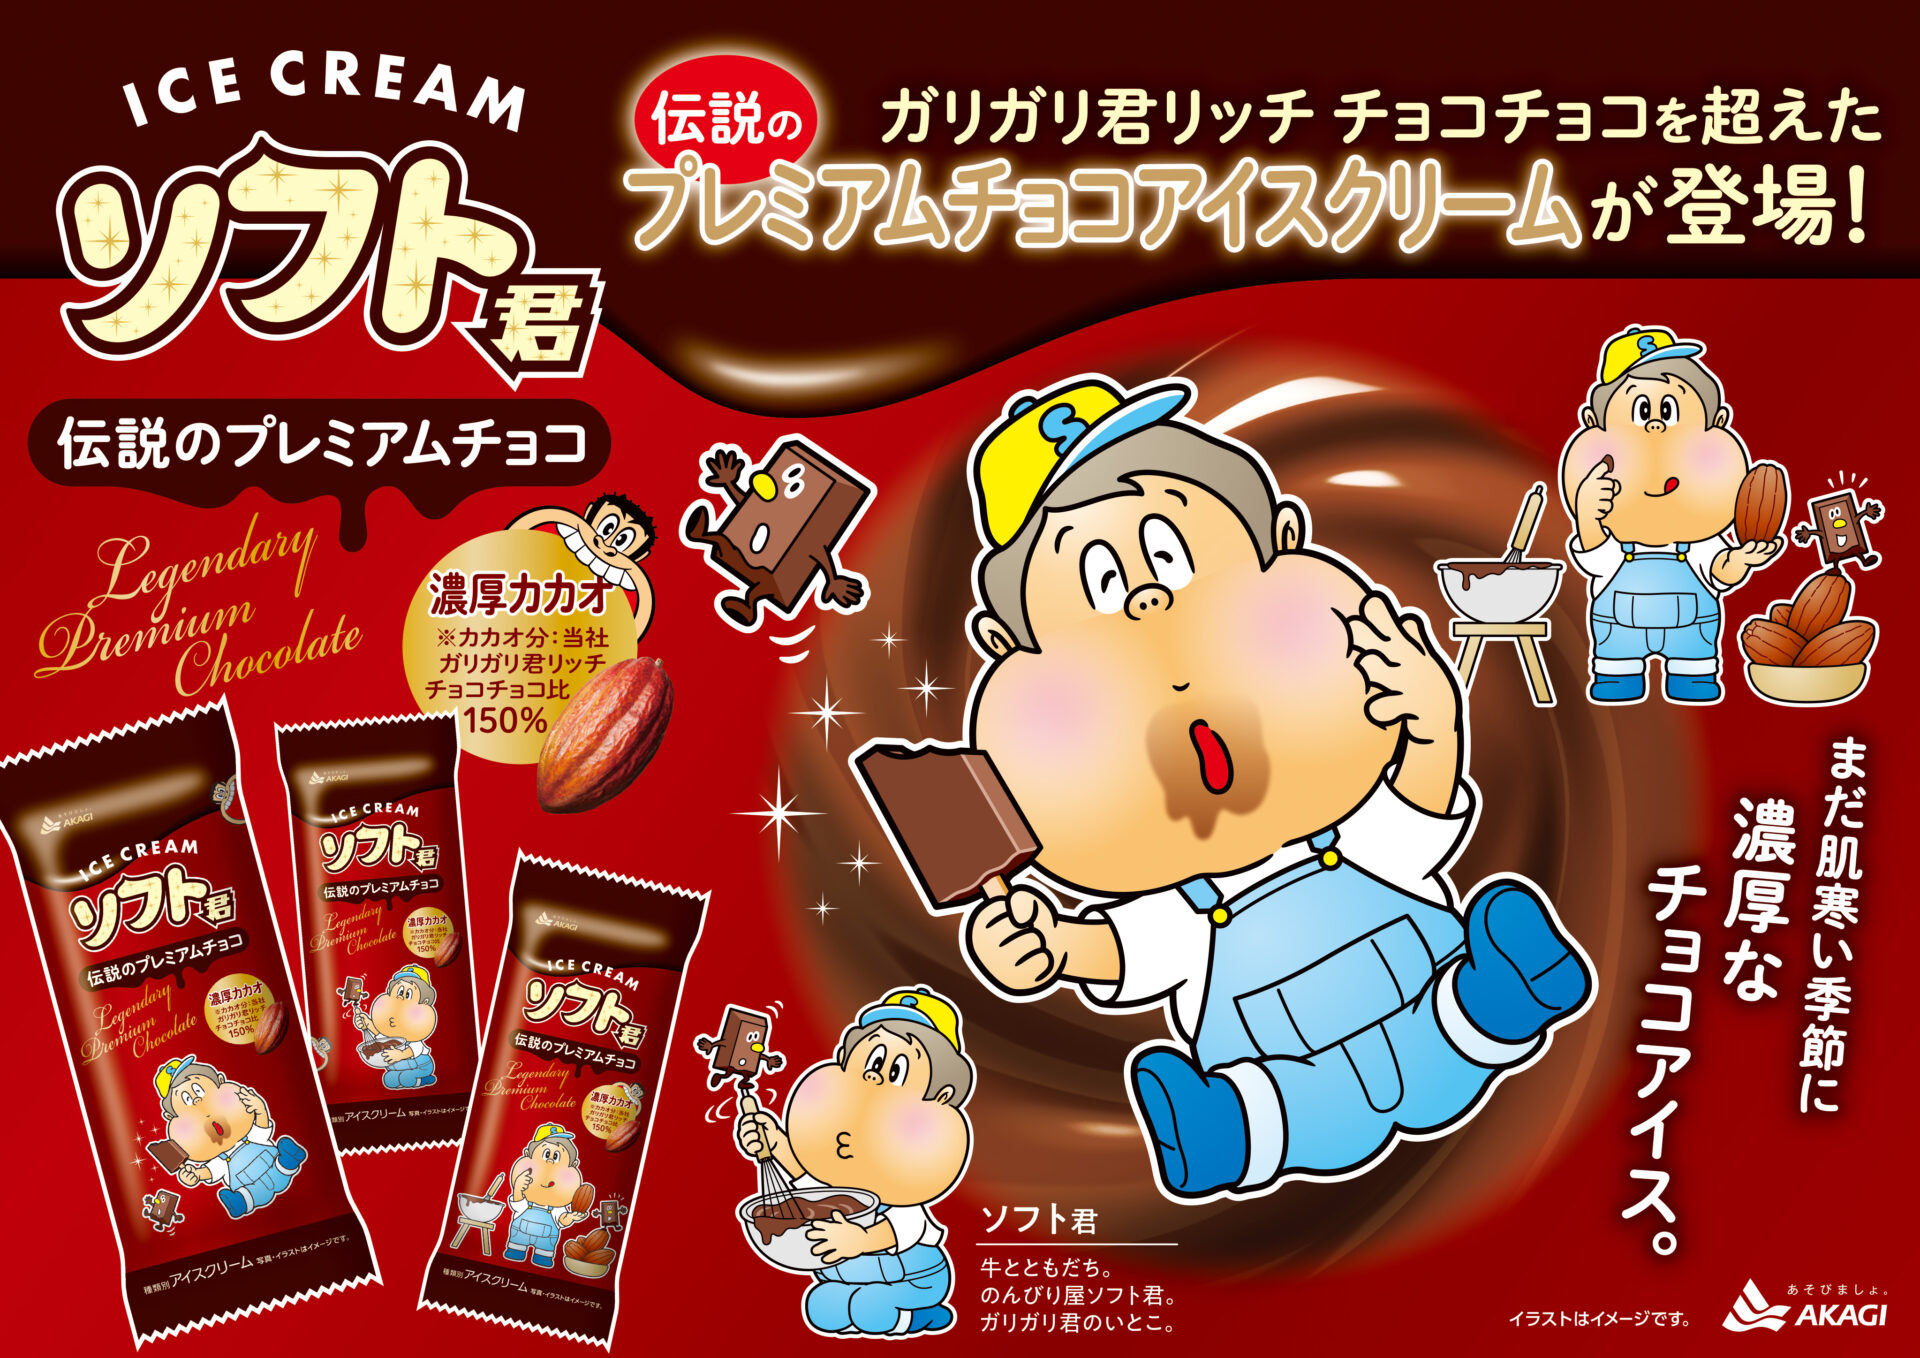 「ソフトくん伝説のプレミアムチョコ」の紹介写真。アイスクリームをおいしそうに食べるソフトくんのイラストが描かれています。